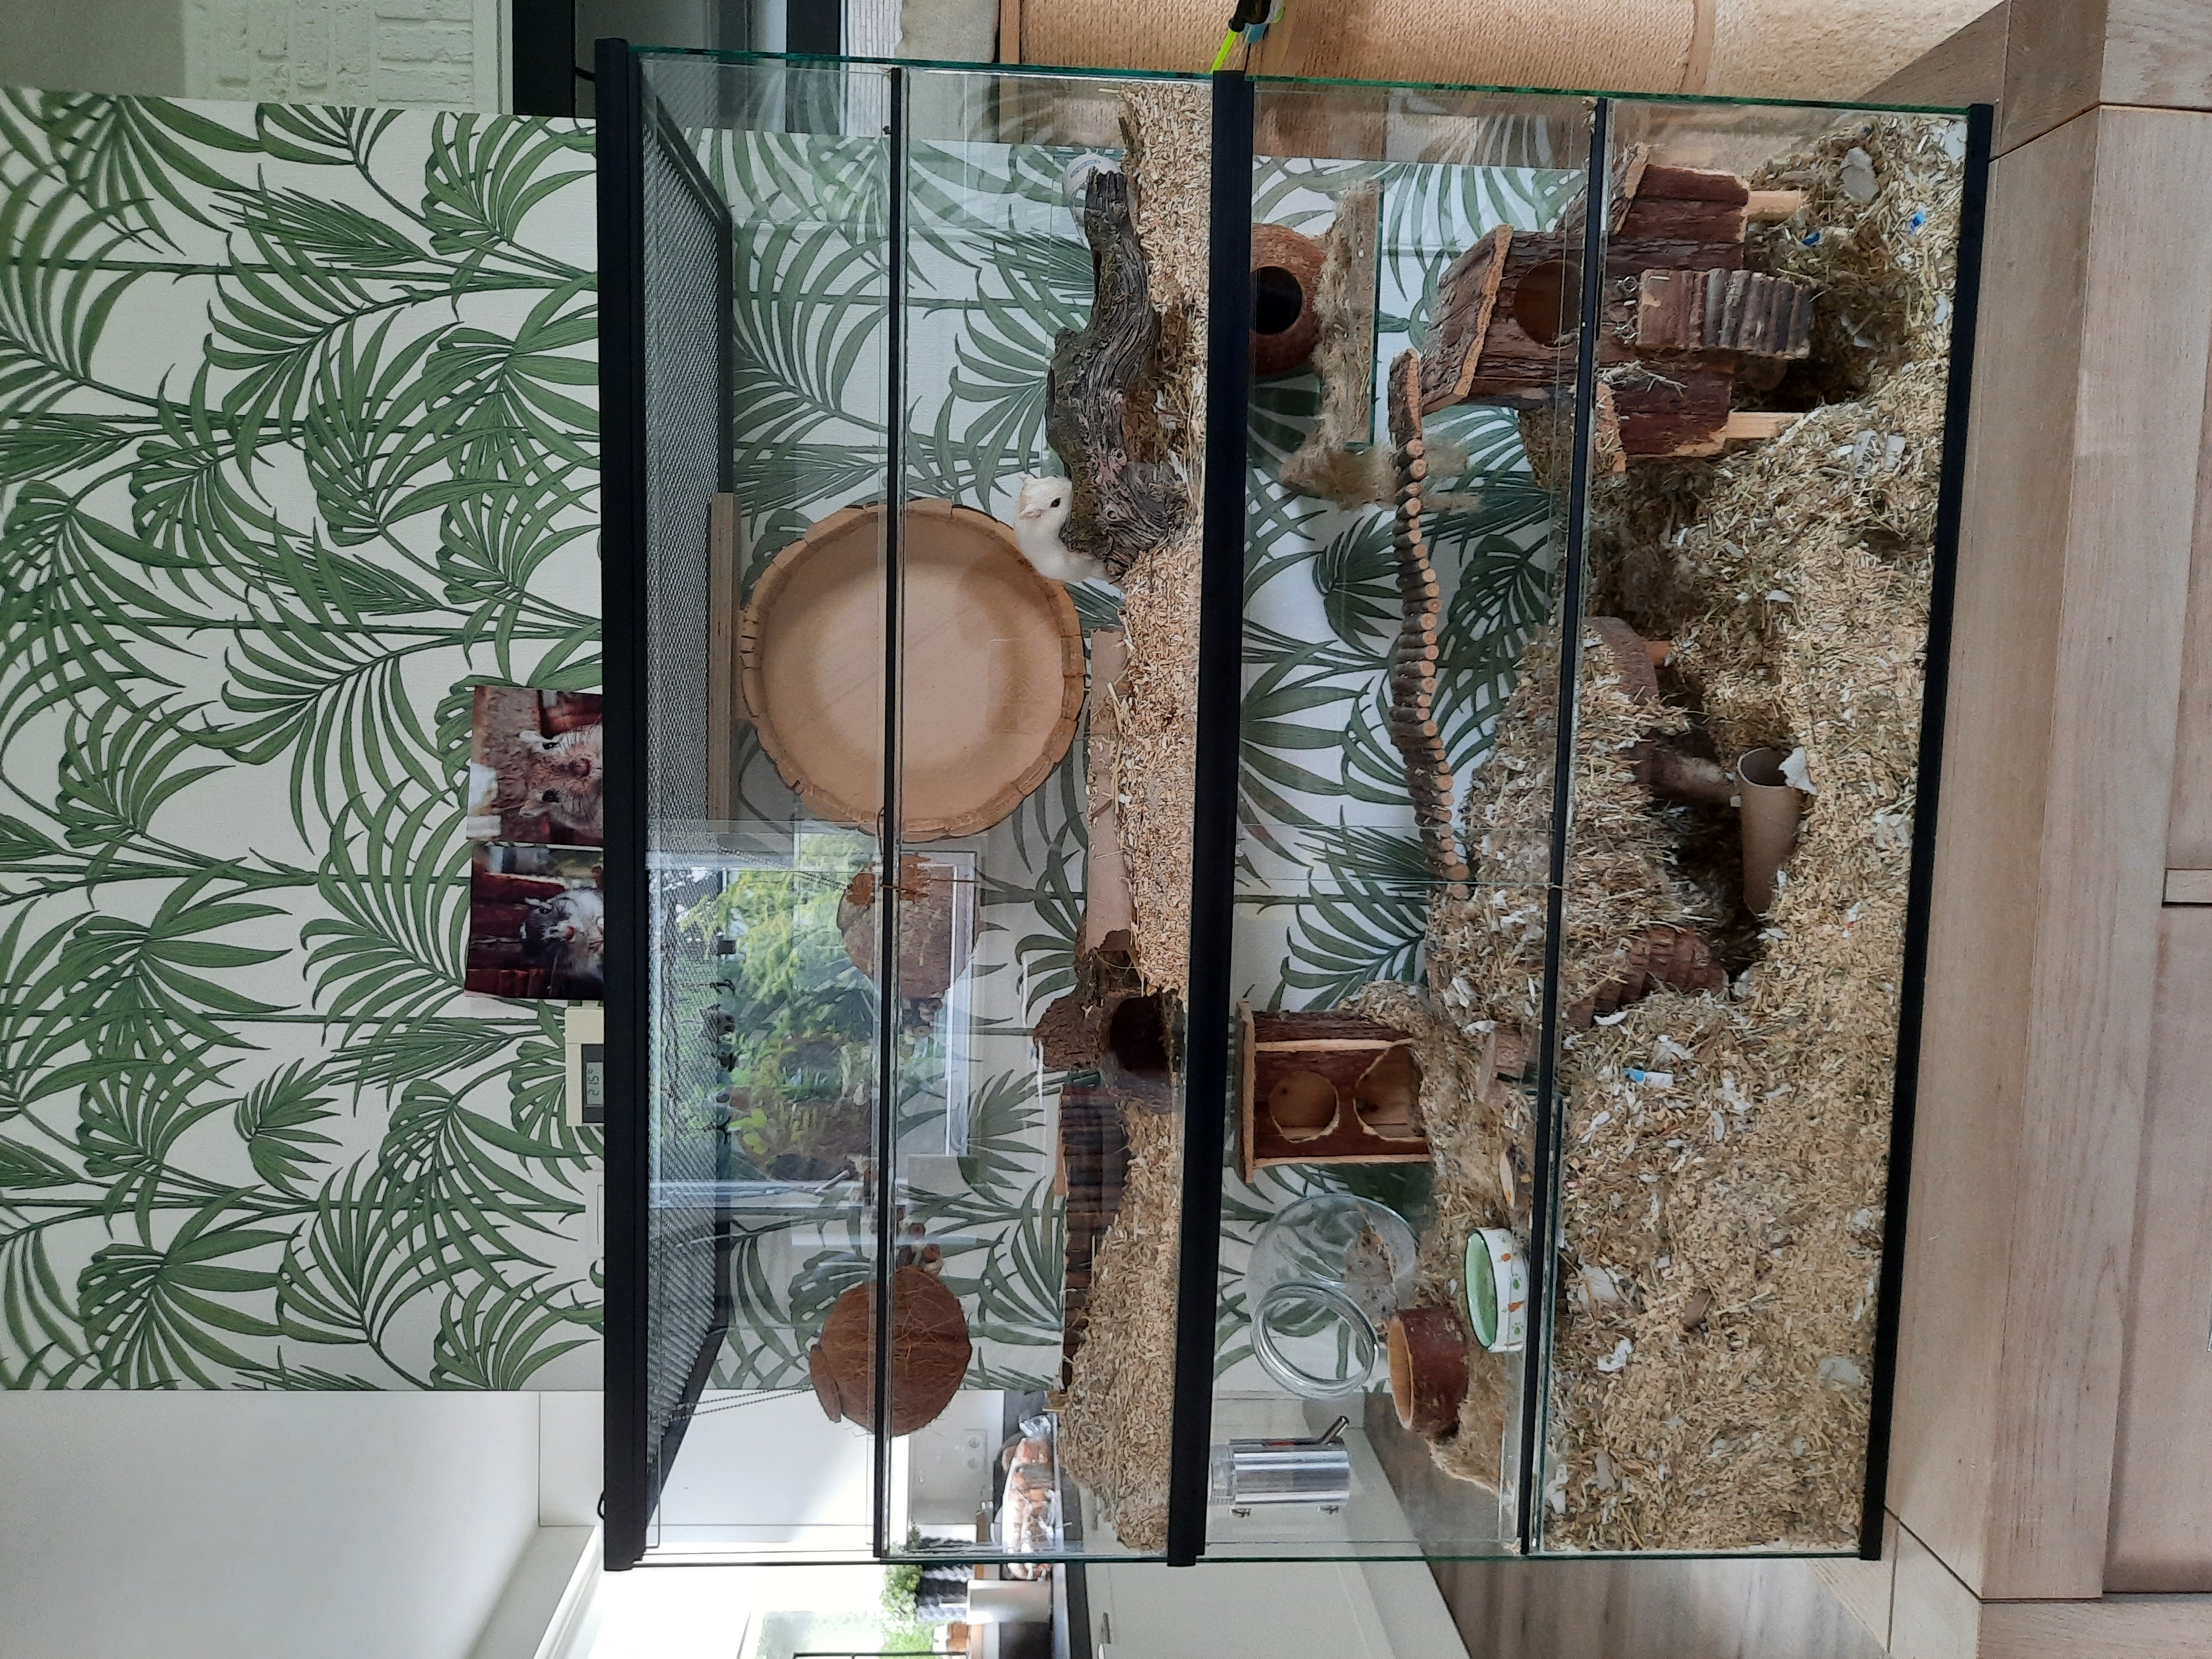 Knaagdieren terrarium met schuifruiten zonder plateaus